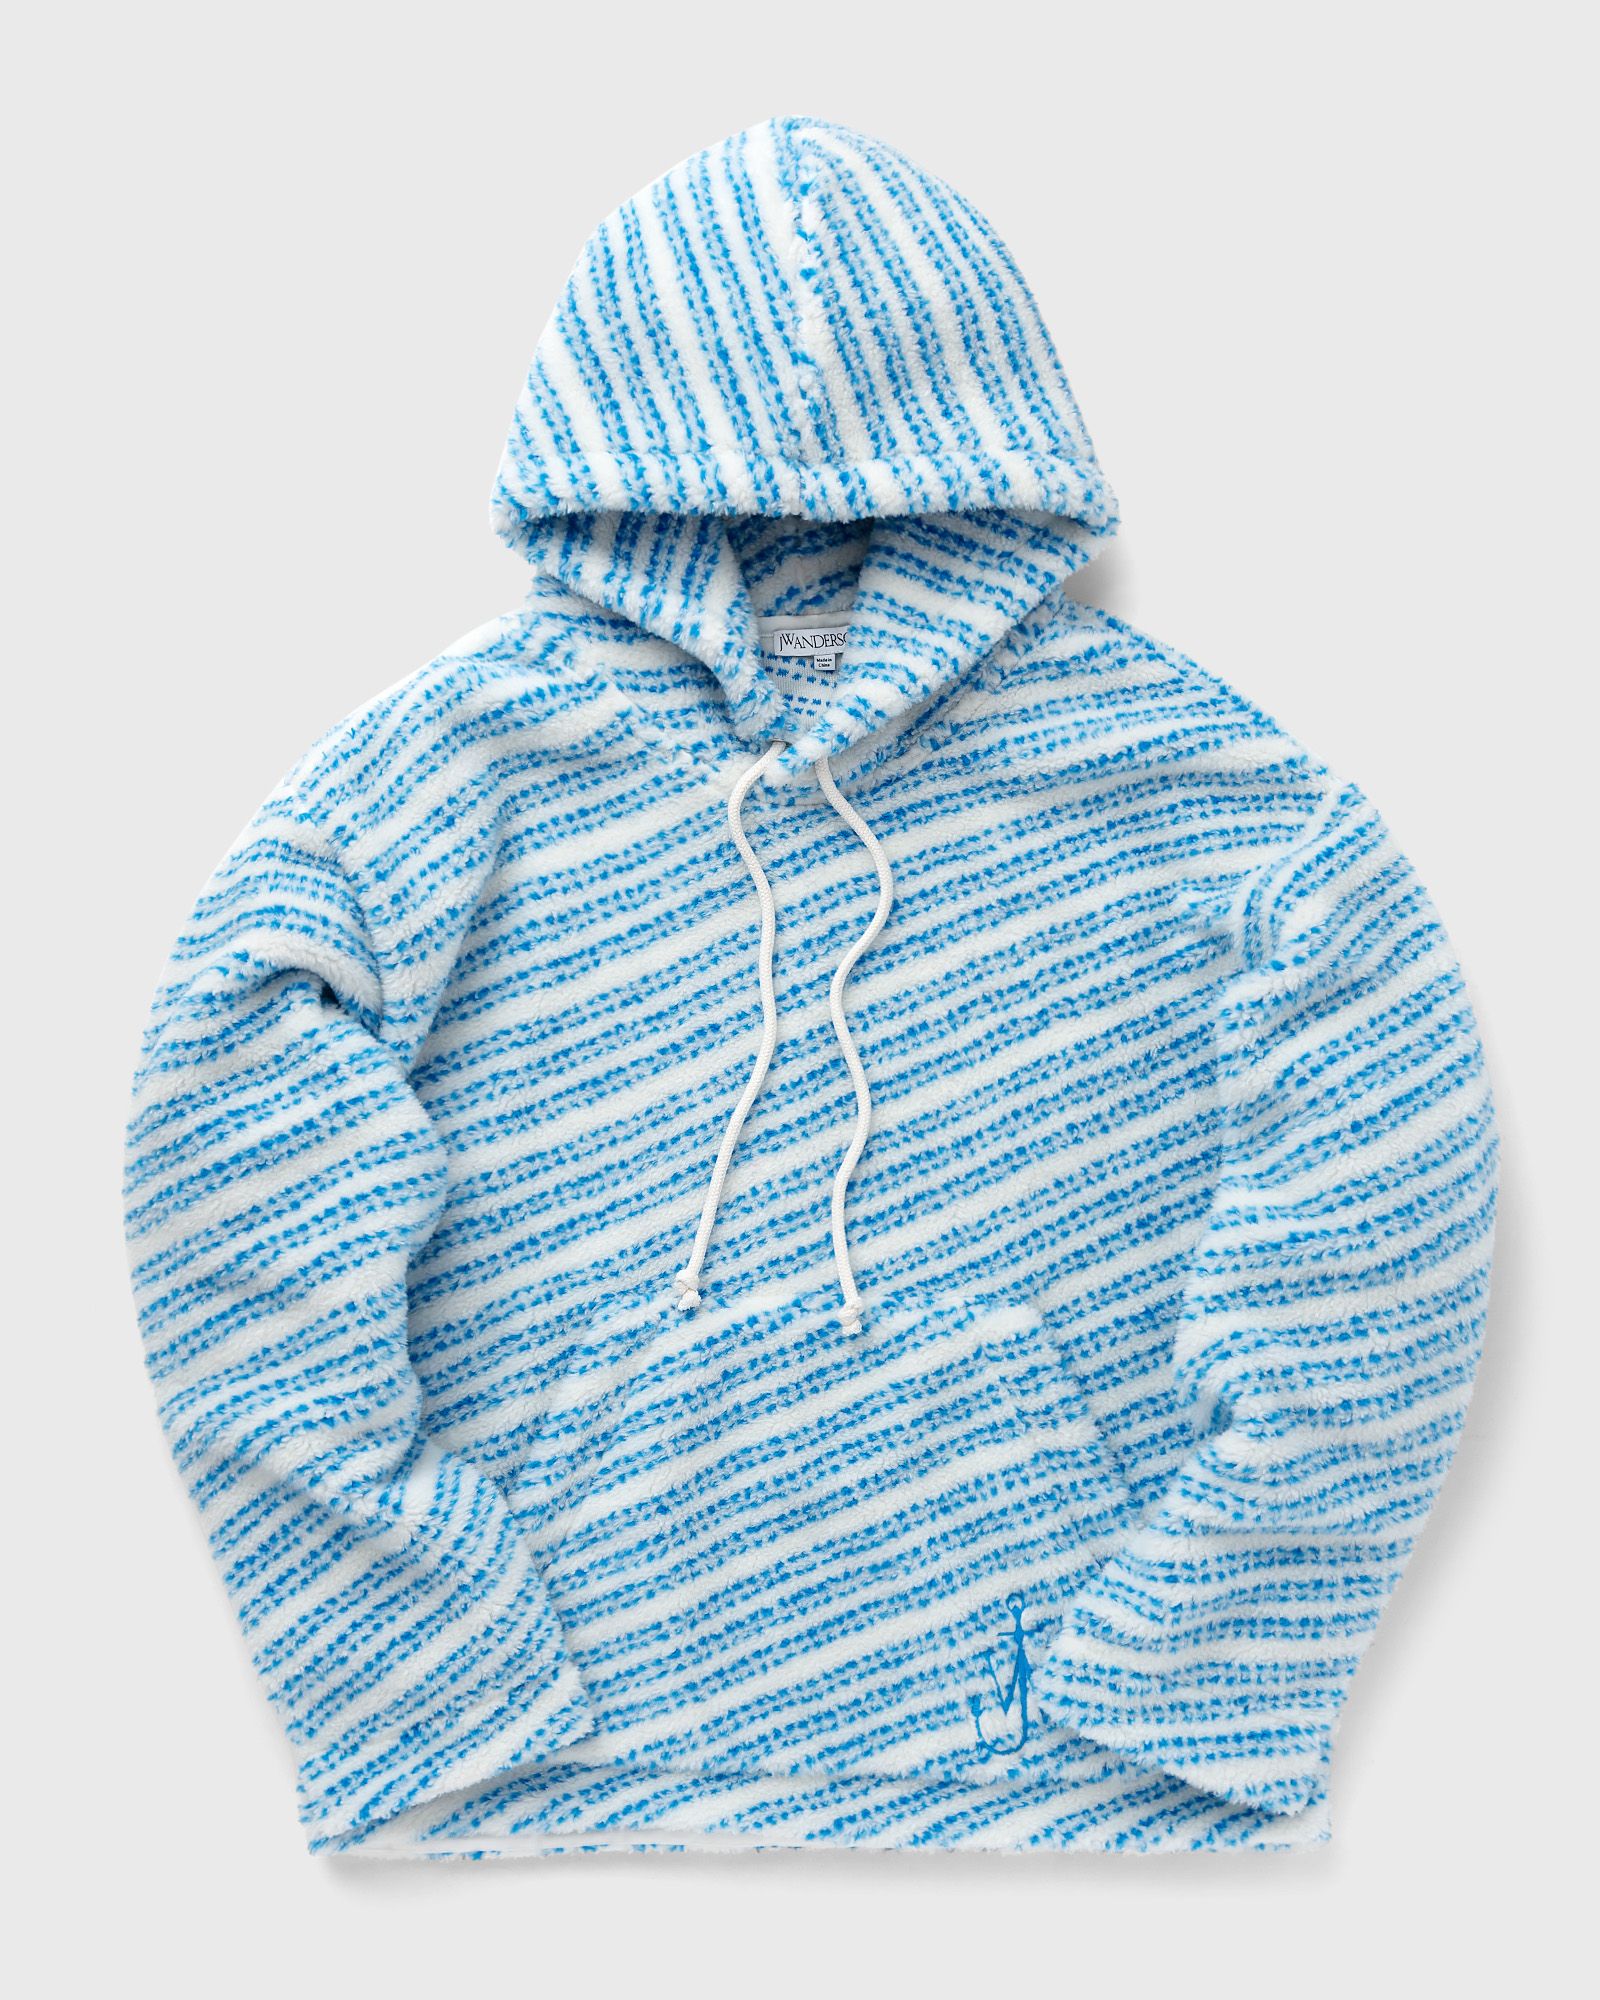 JW Anderson - relaxed fit hoodie men hoodies blue|white in größe:xl